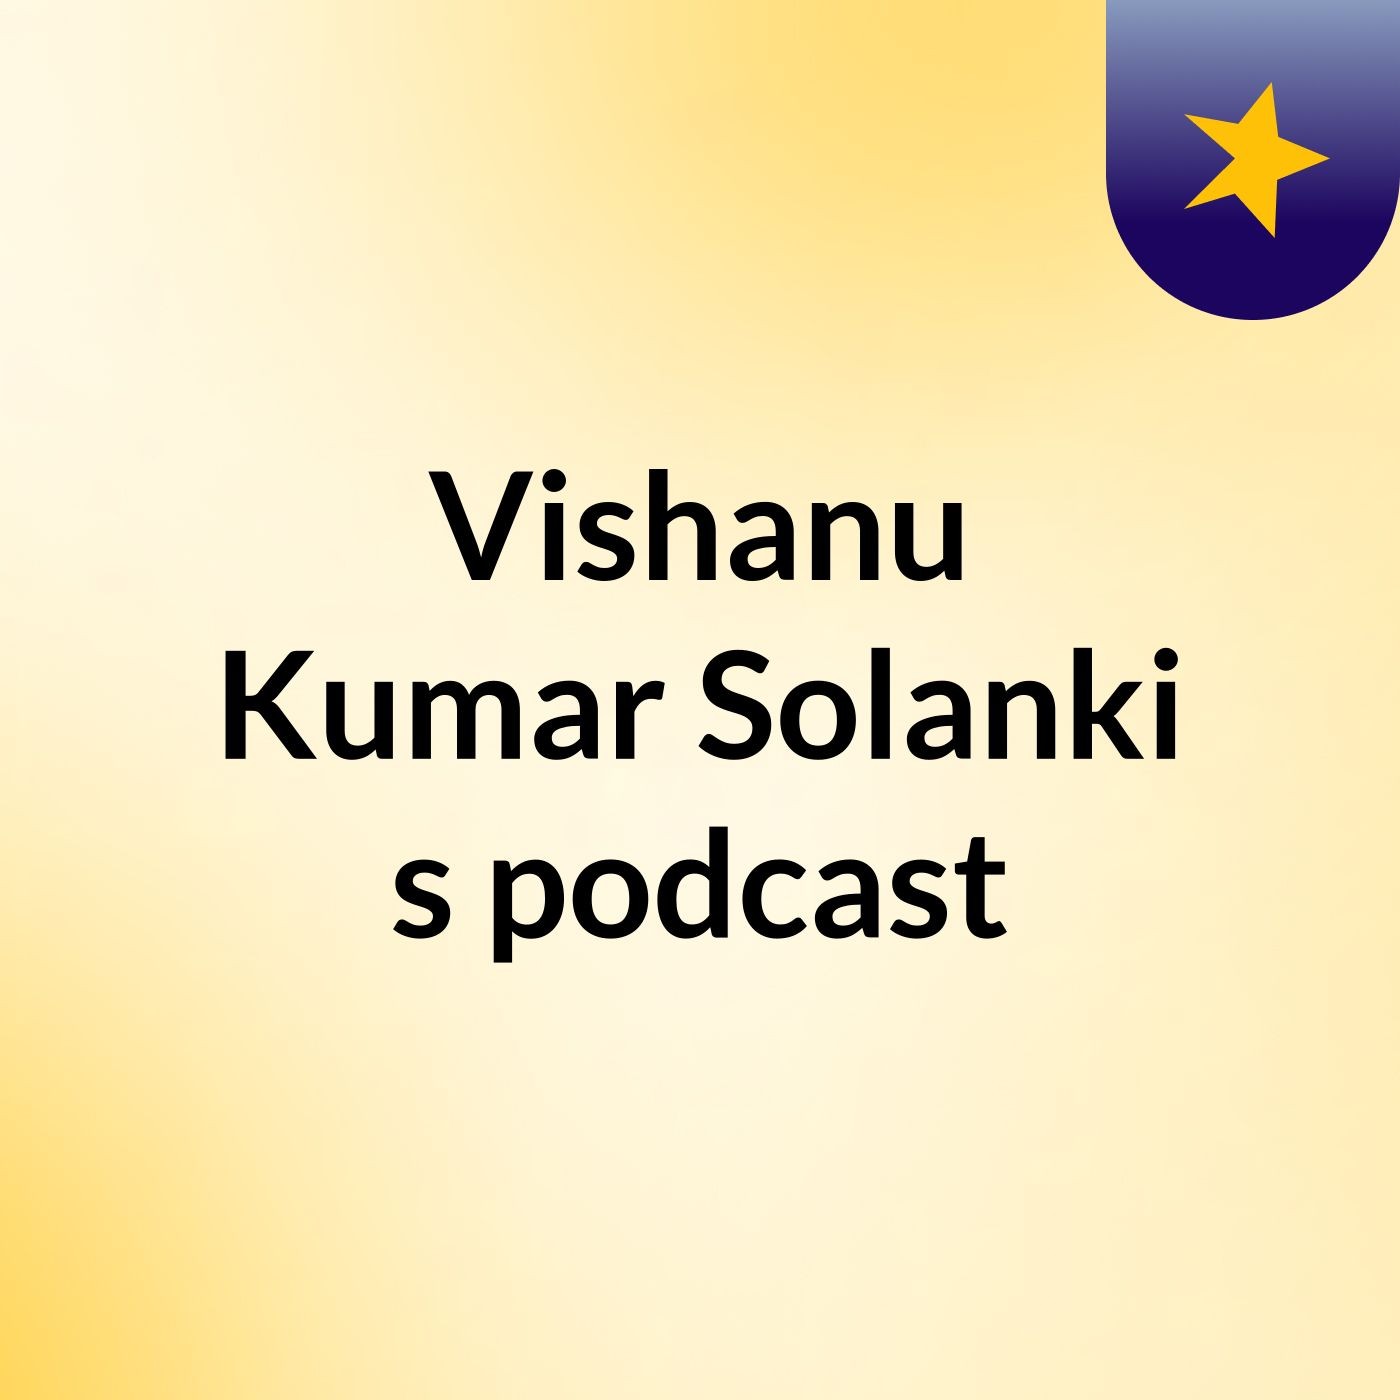 Vishanu Kumar Solanki's podcast